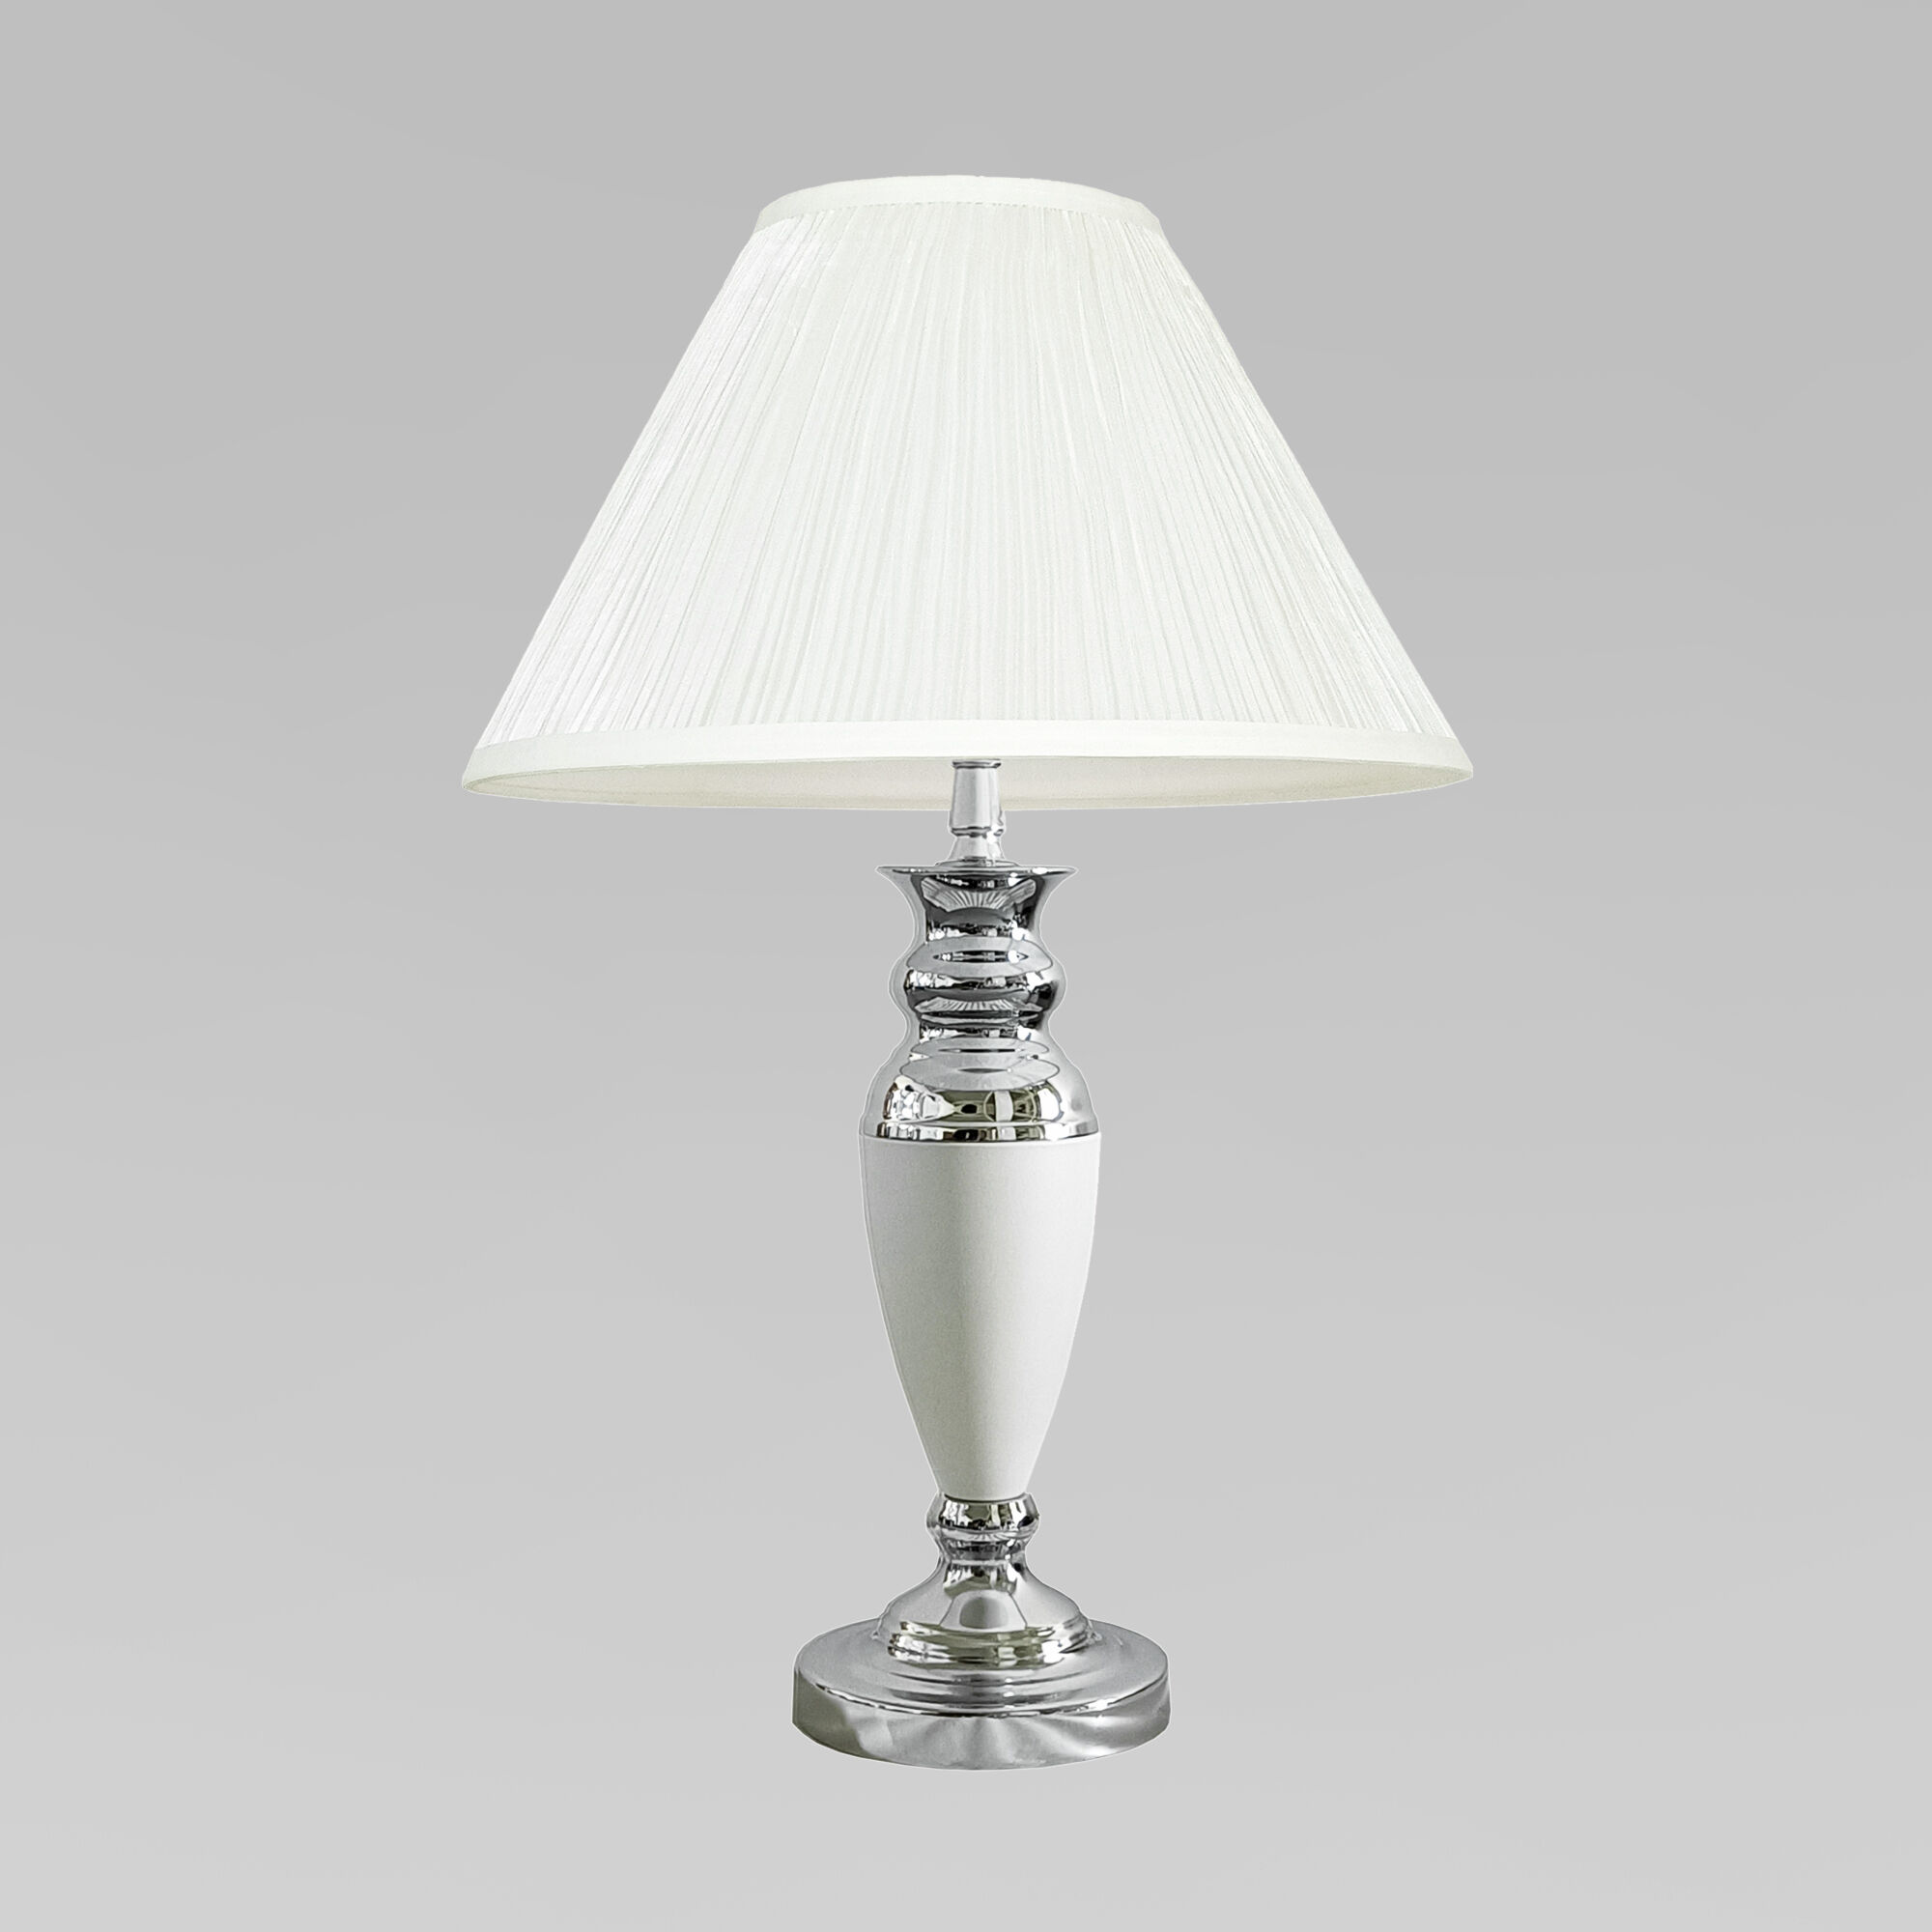 Настольная лампа 49 см, Eurosvet 008/1T, белый-хром